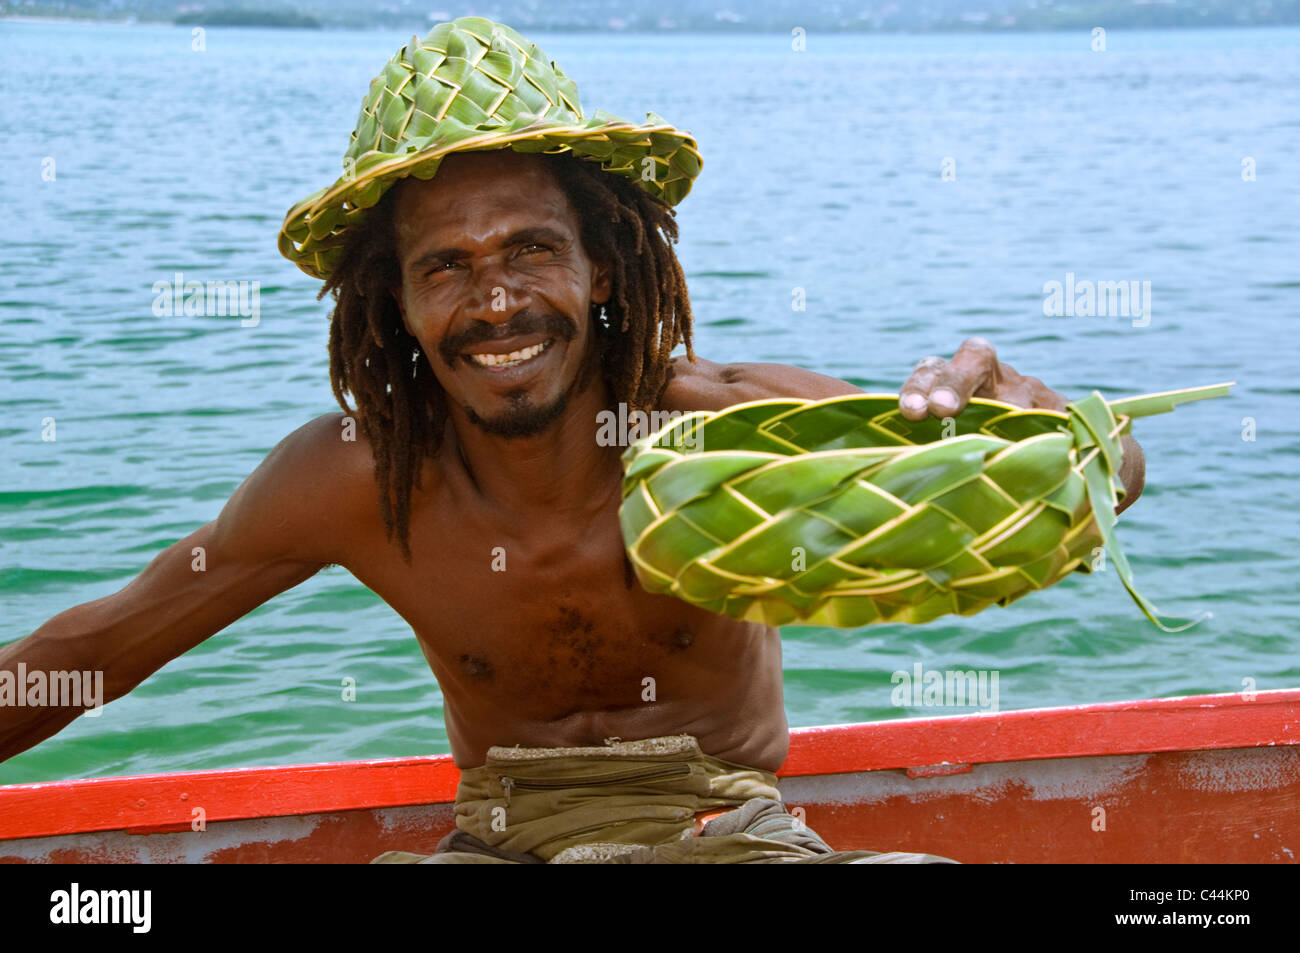 Locali di San Luciano uomo Vendita di Palm Frond prodotti da una barca, St Lucia, Caraibi, West Indies Foto Stock